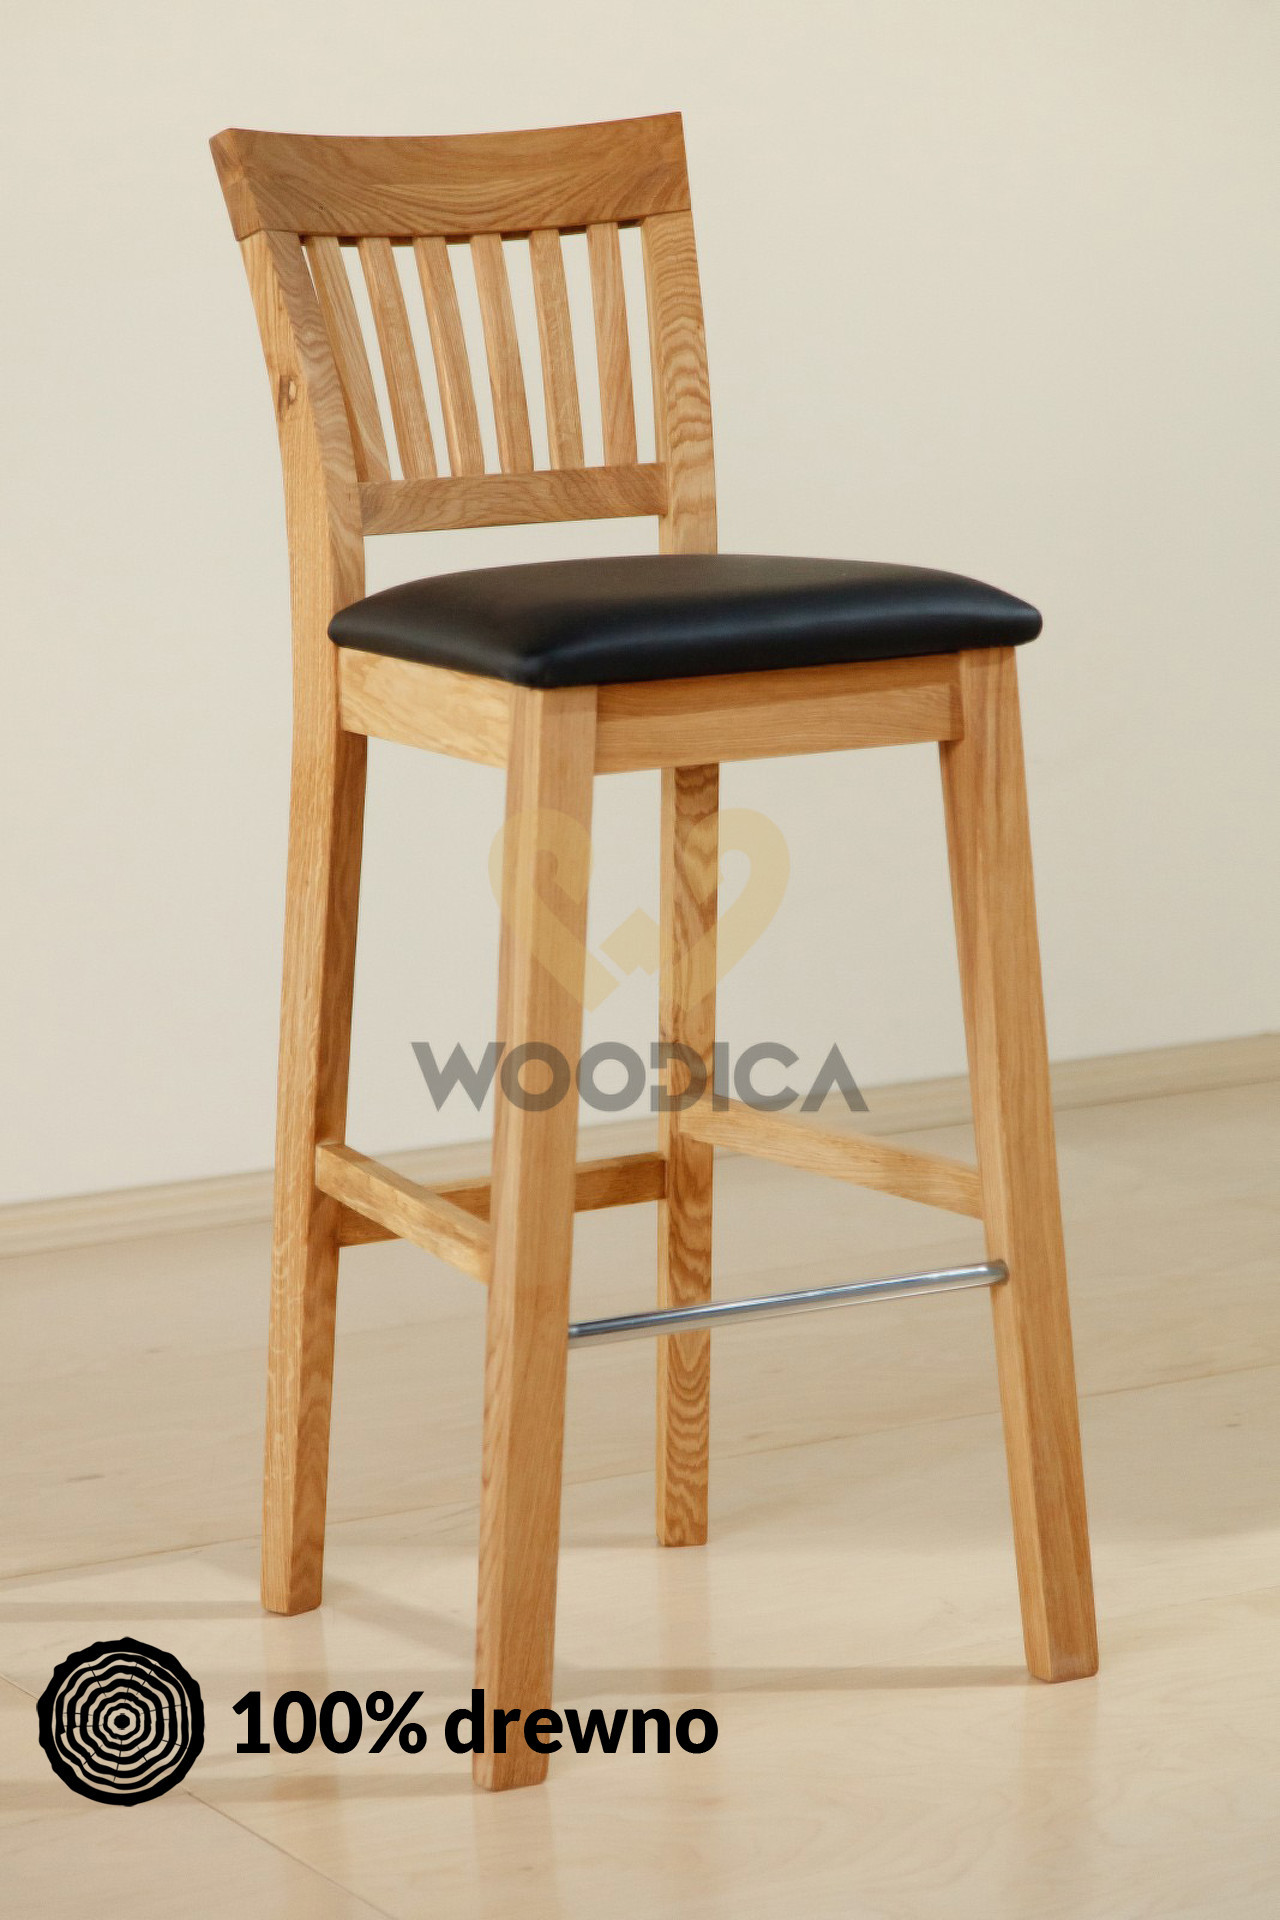 Woodica Krzesło dębowe barowe 02 Dąb/Krz/Bar02